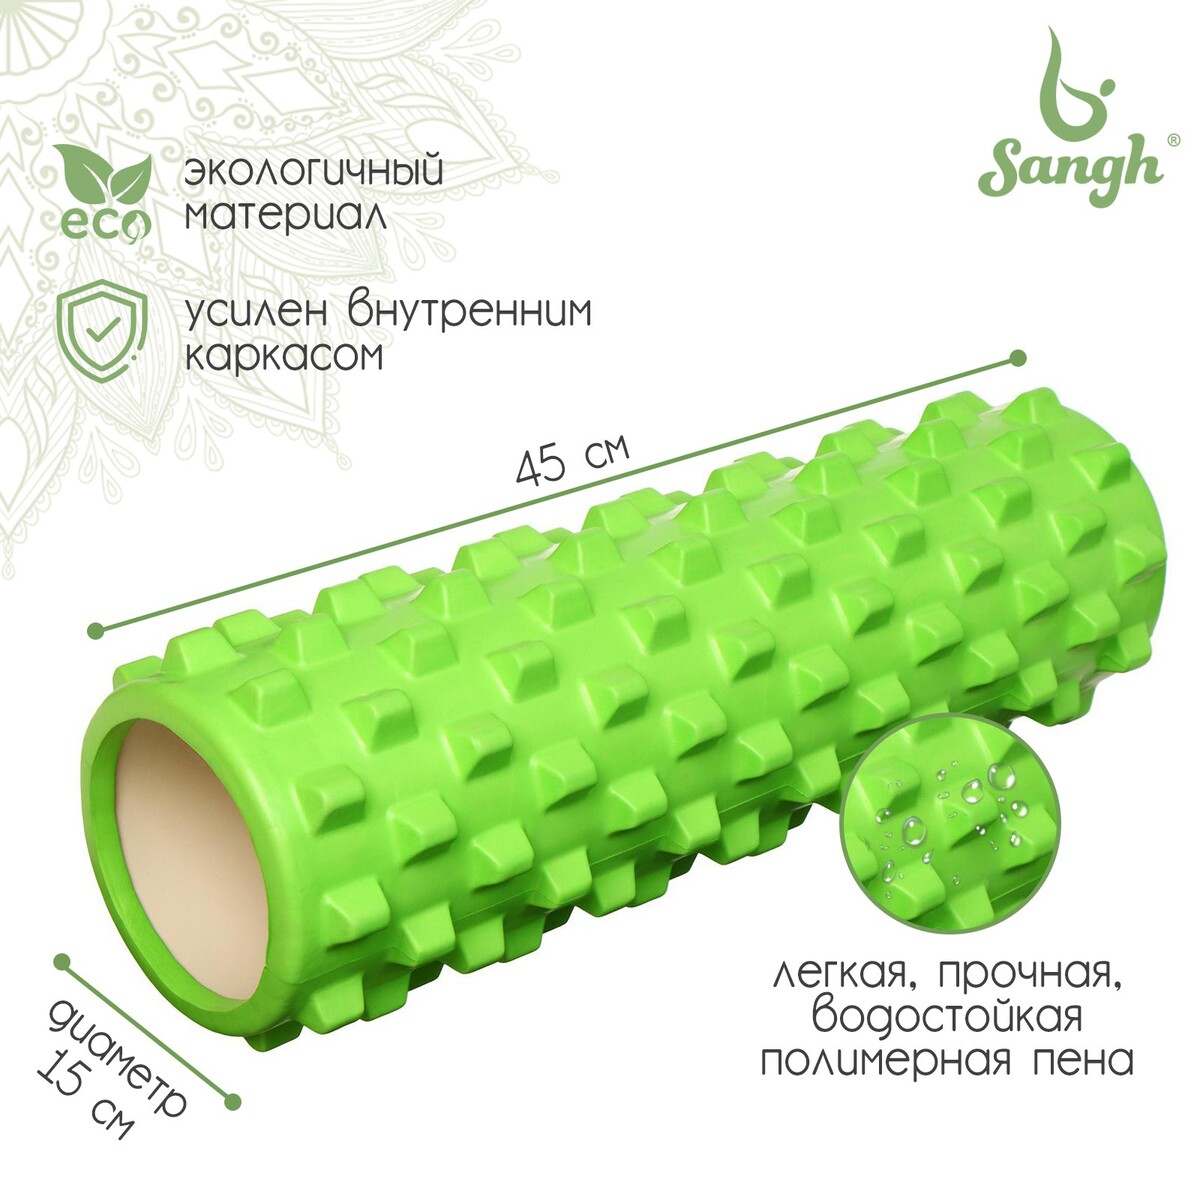 Ролик массажный sangh, 45х15, цвет зеленый ролик для йоги sportex и пилатеса 90x15cm эва зеленый гранит ry90 8 d34206